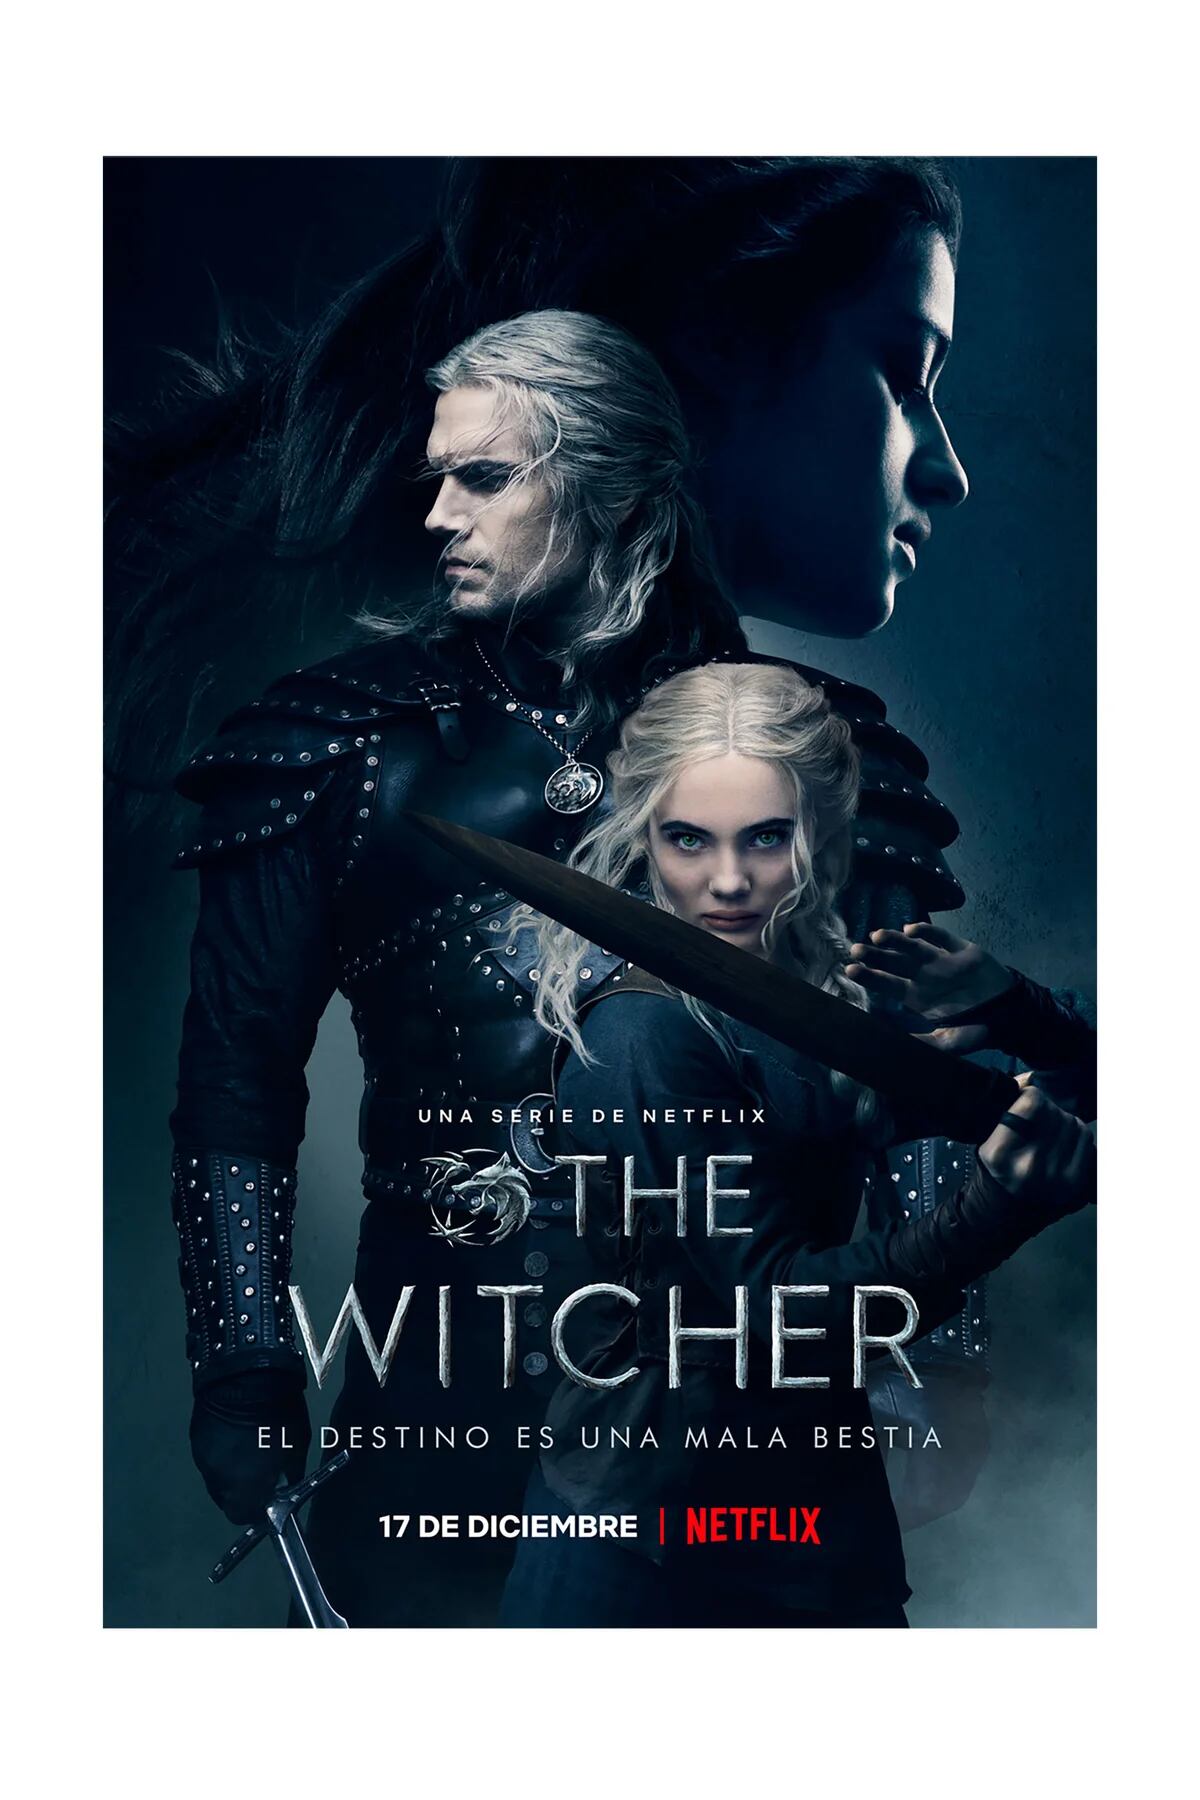 El autor de los libros de 'The Witcher' destruye a Netflix afirmando que  dio ideas para la serie pero nunca escuchan